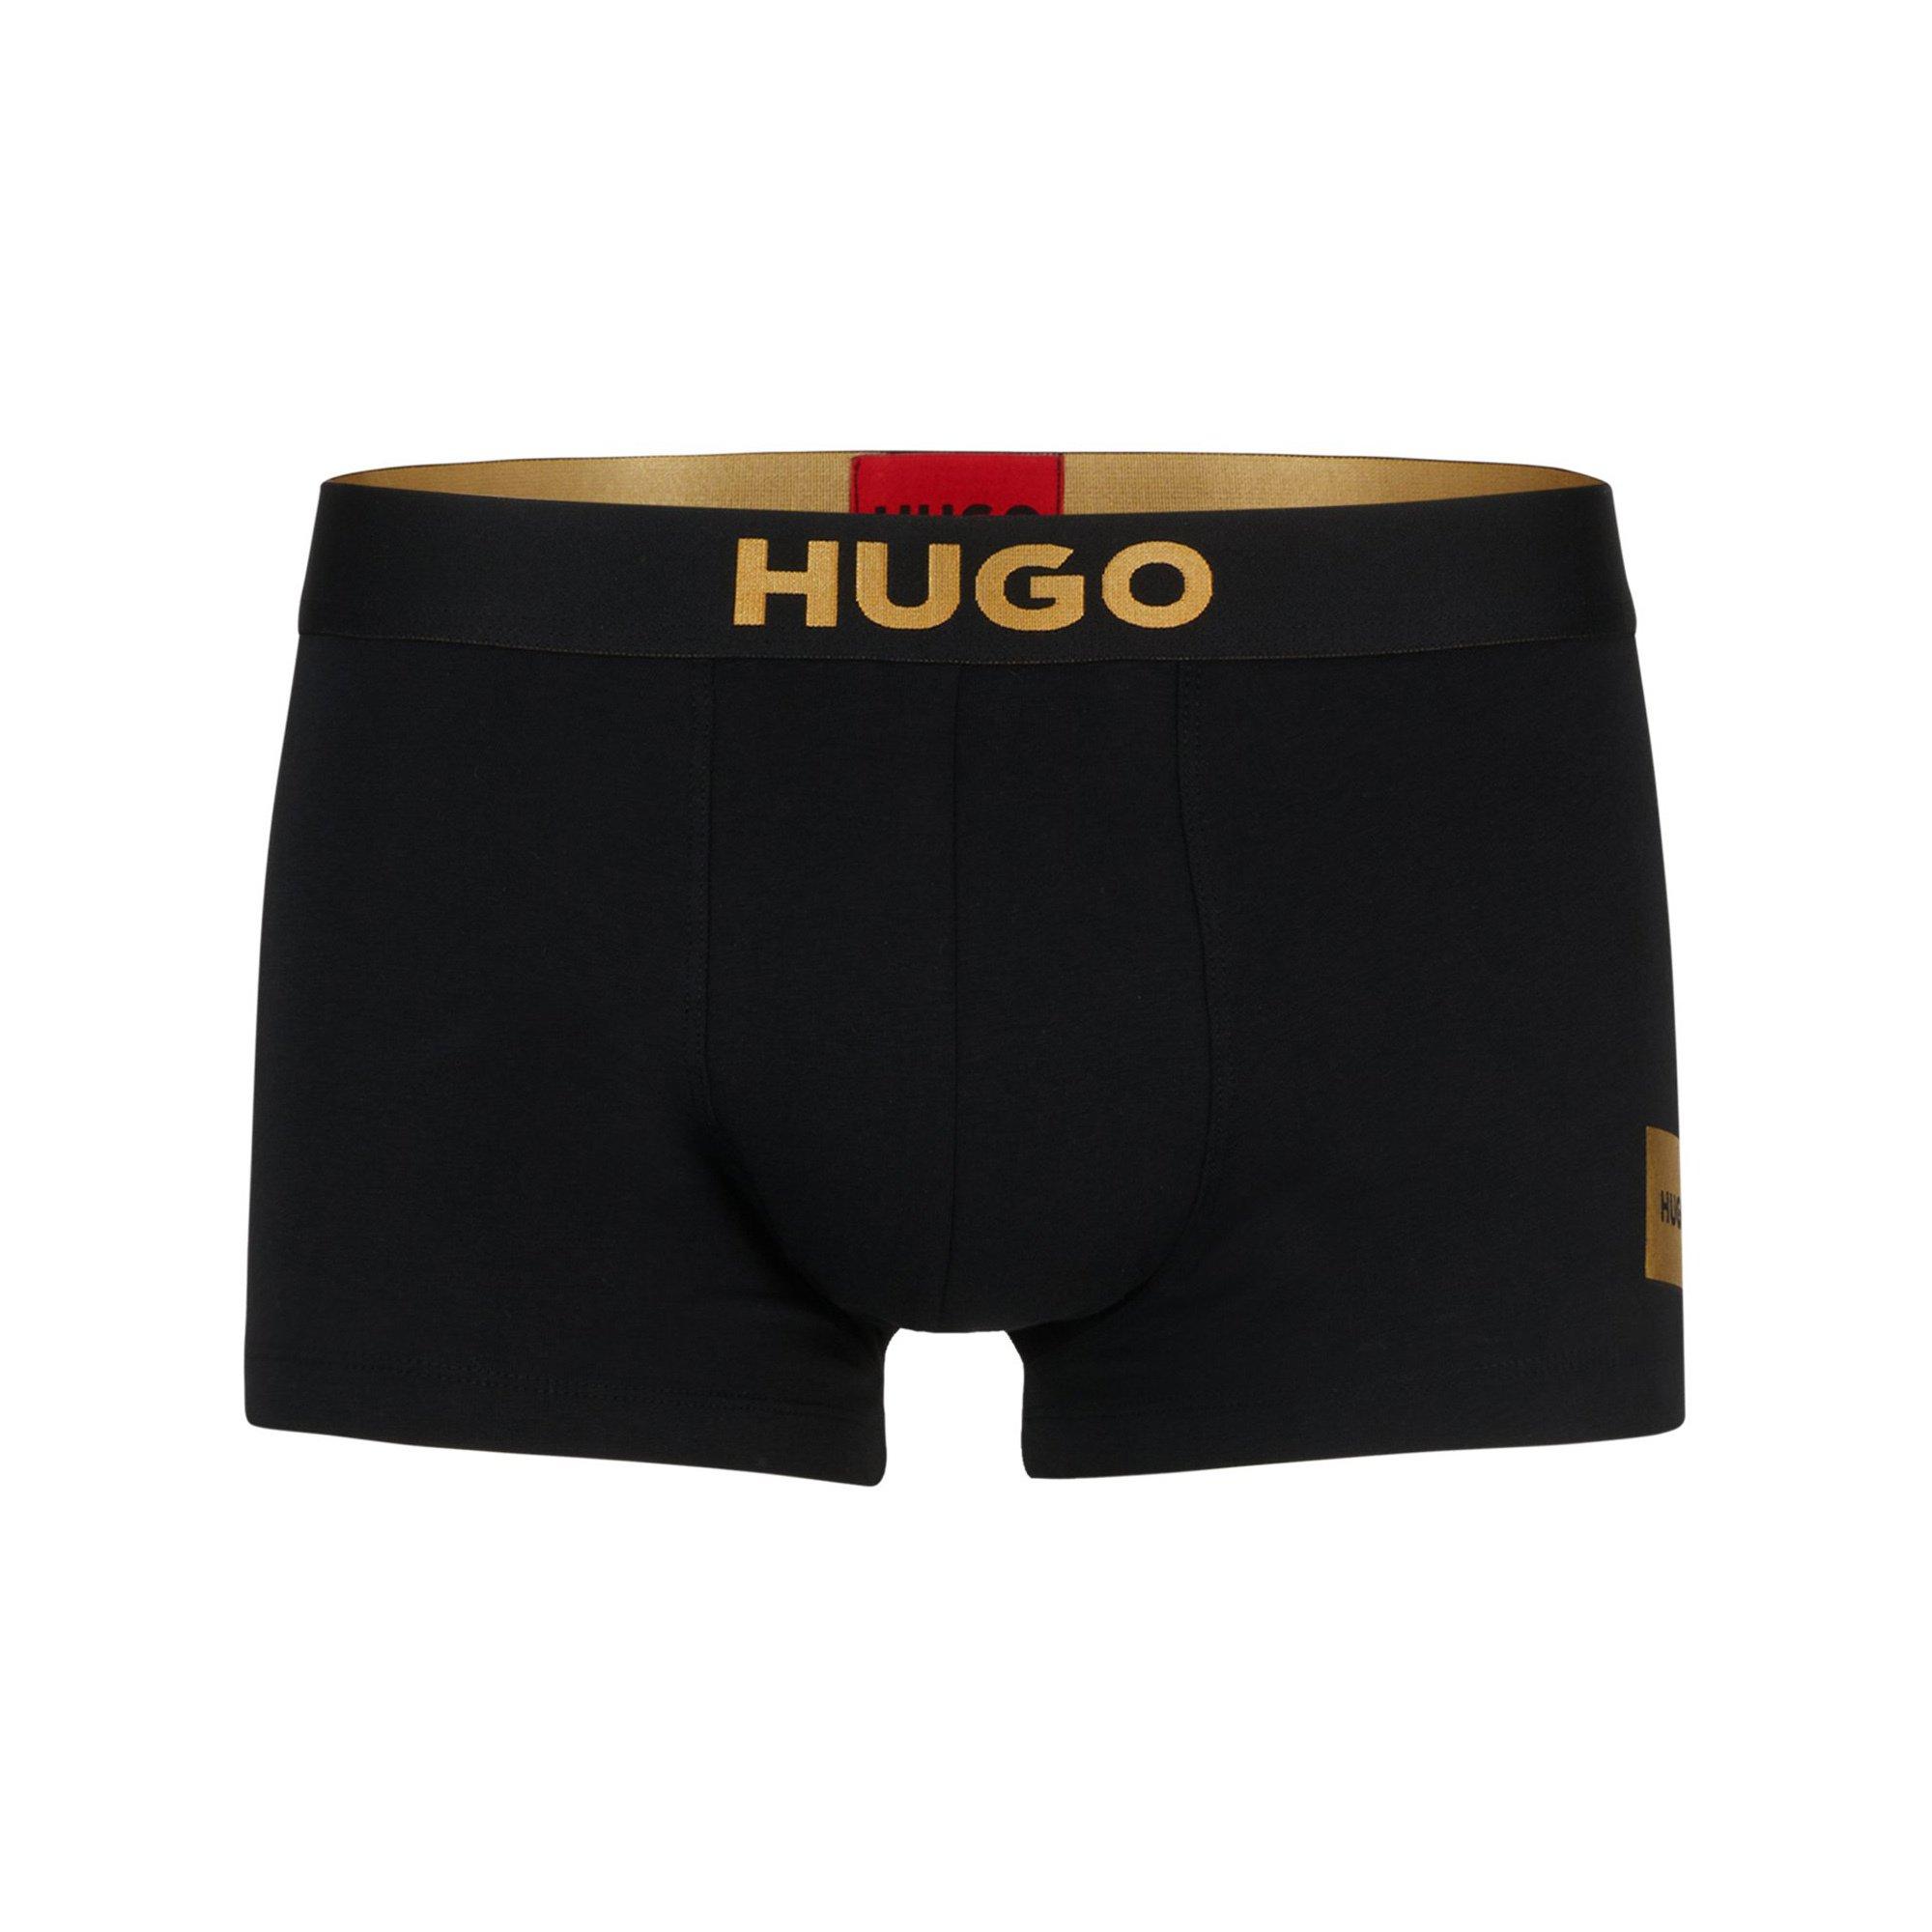 HUGO TRUNK&SOCKS GIFT Multipack, shortys 